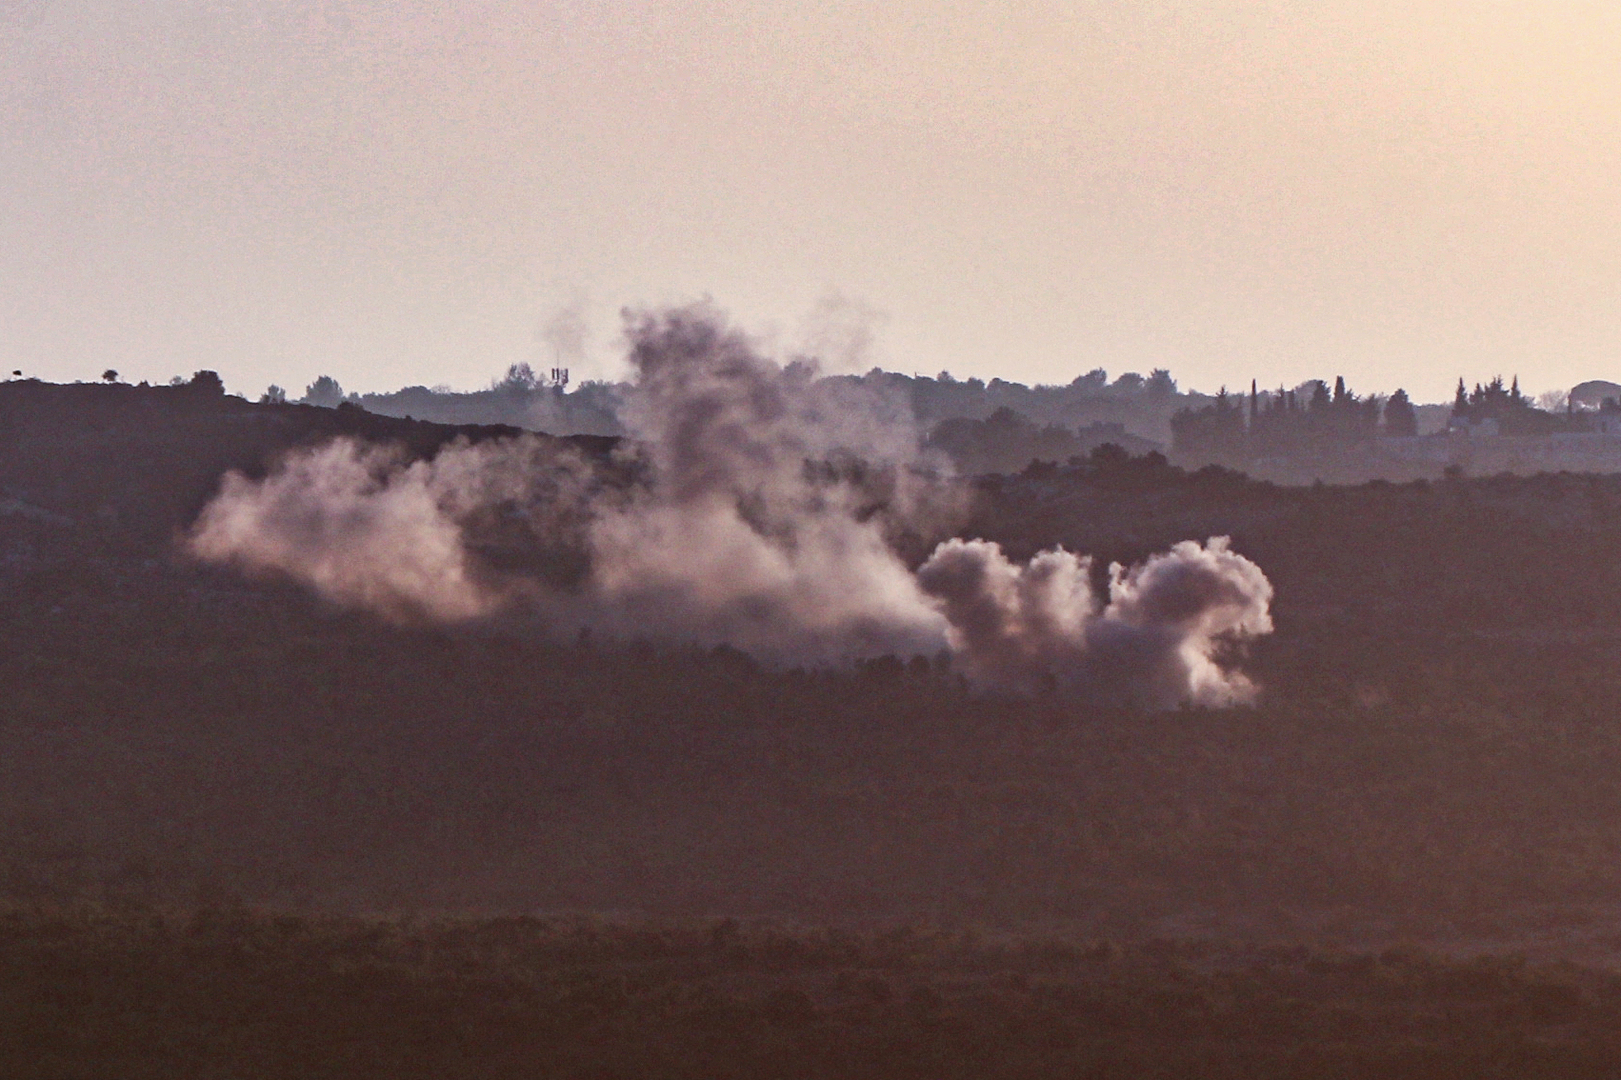 الجيش الإسرائيلي يشن سلسلة كبيرة من الغارات على بلدات في جنوب لبنان (فيديوهات)